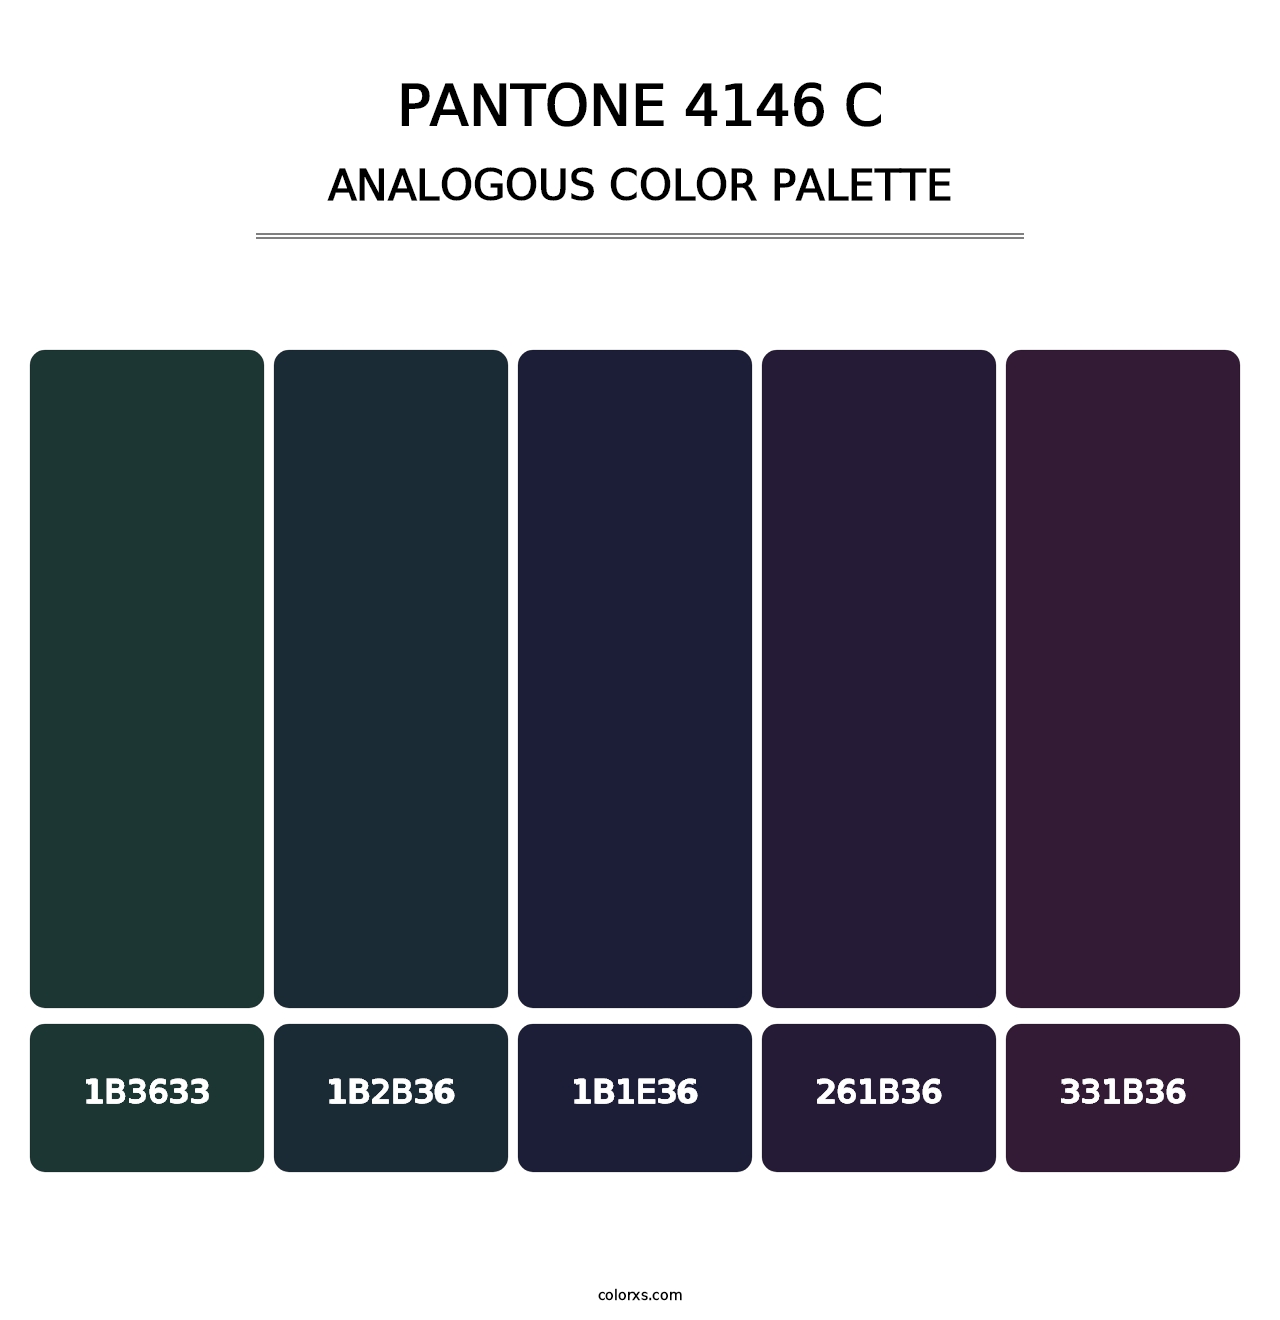 PANTONE 4146 C - Analogous Color Palette